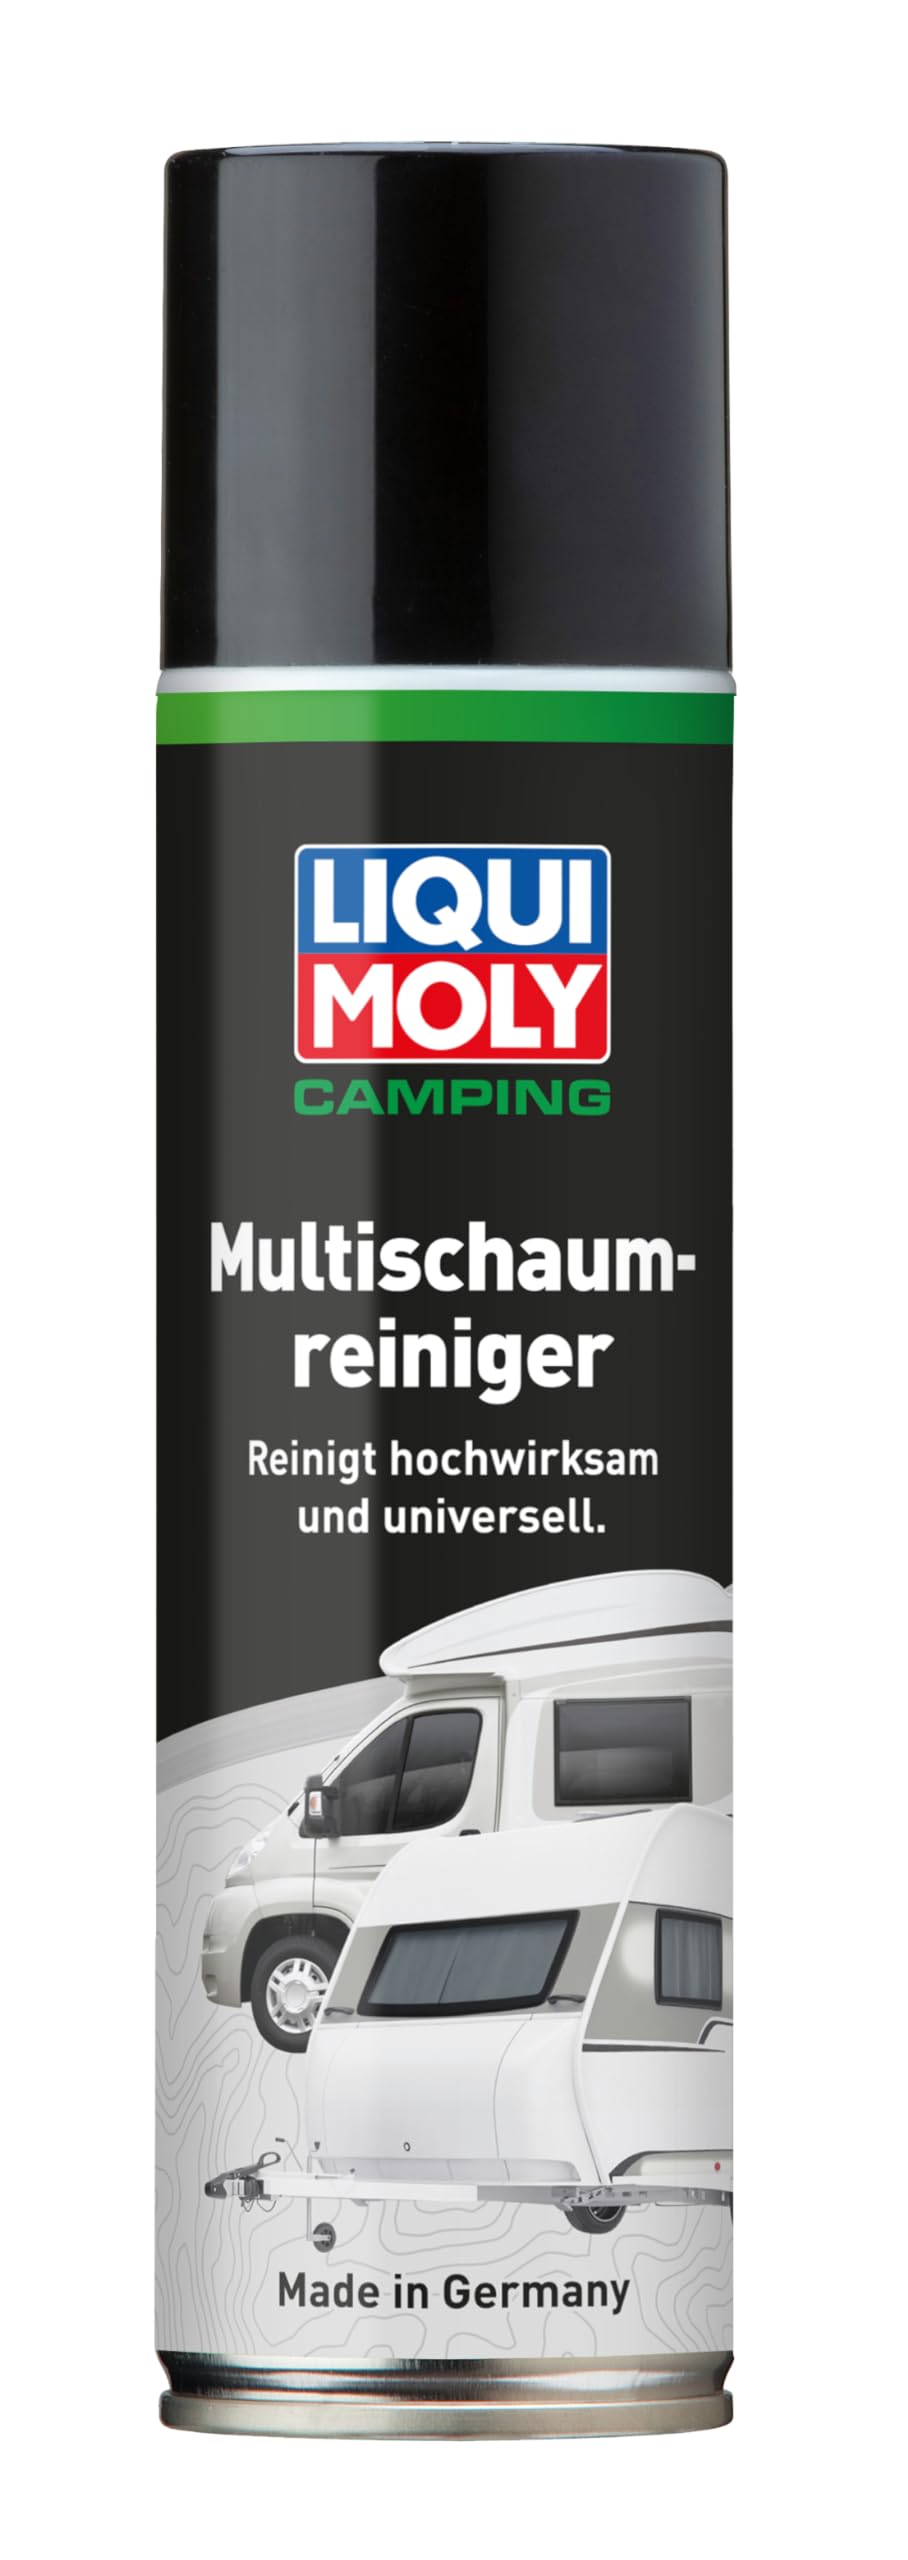 LIQUI MOLY Camping Multischaumreiniger | 300 ml | Reinigung/Pflege/Wartung | Art.-Nr.: 21812 von Liqui Moly